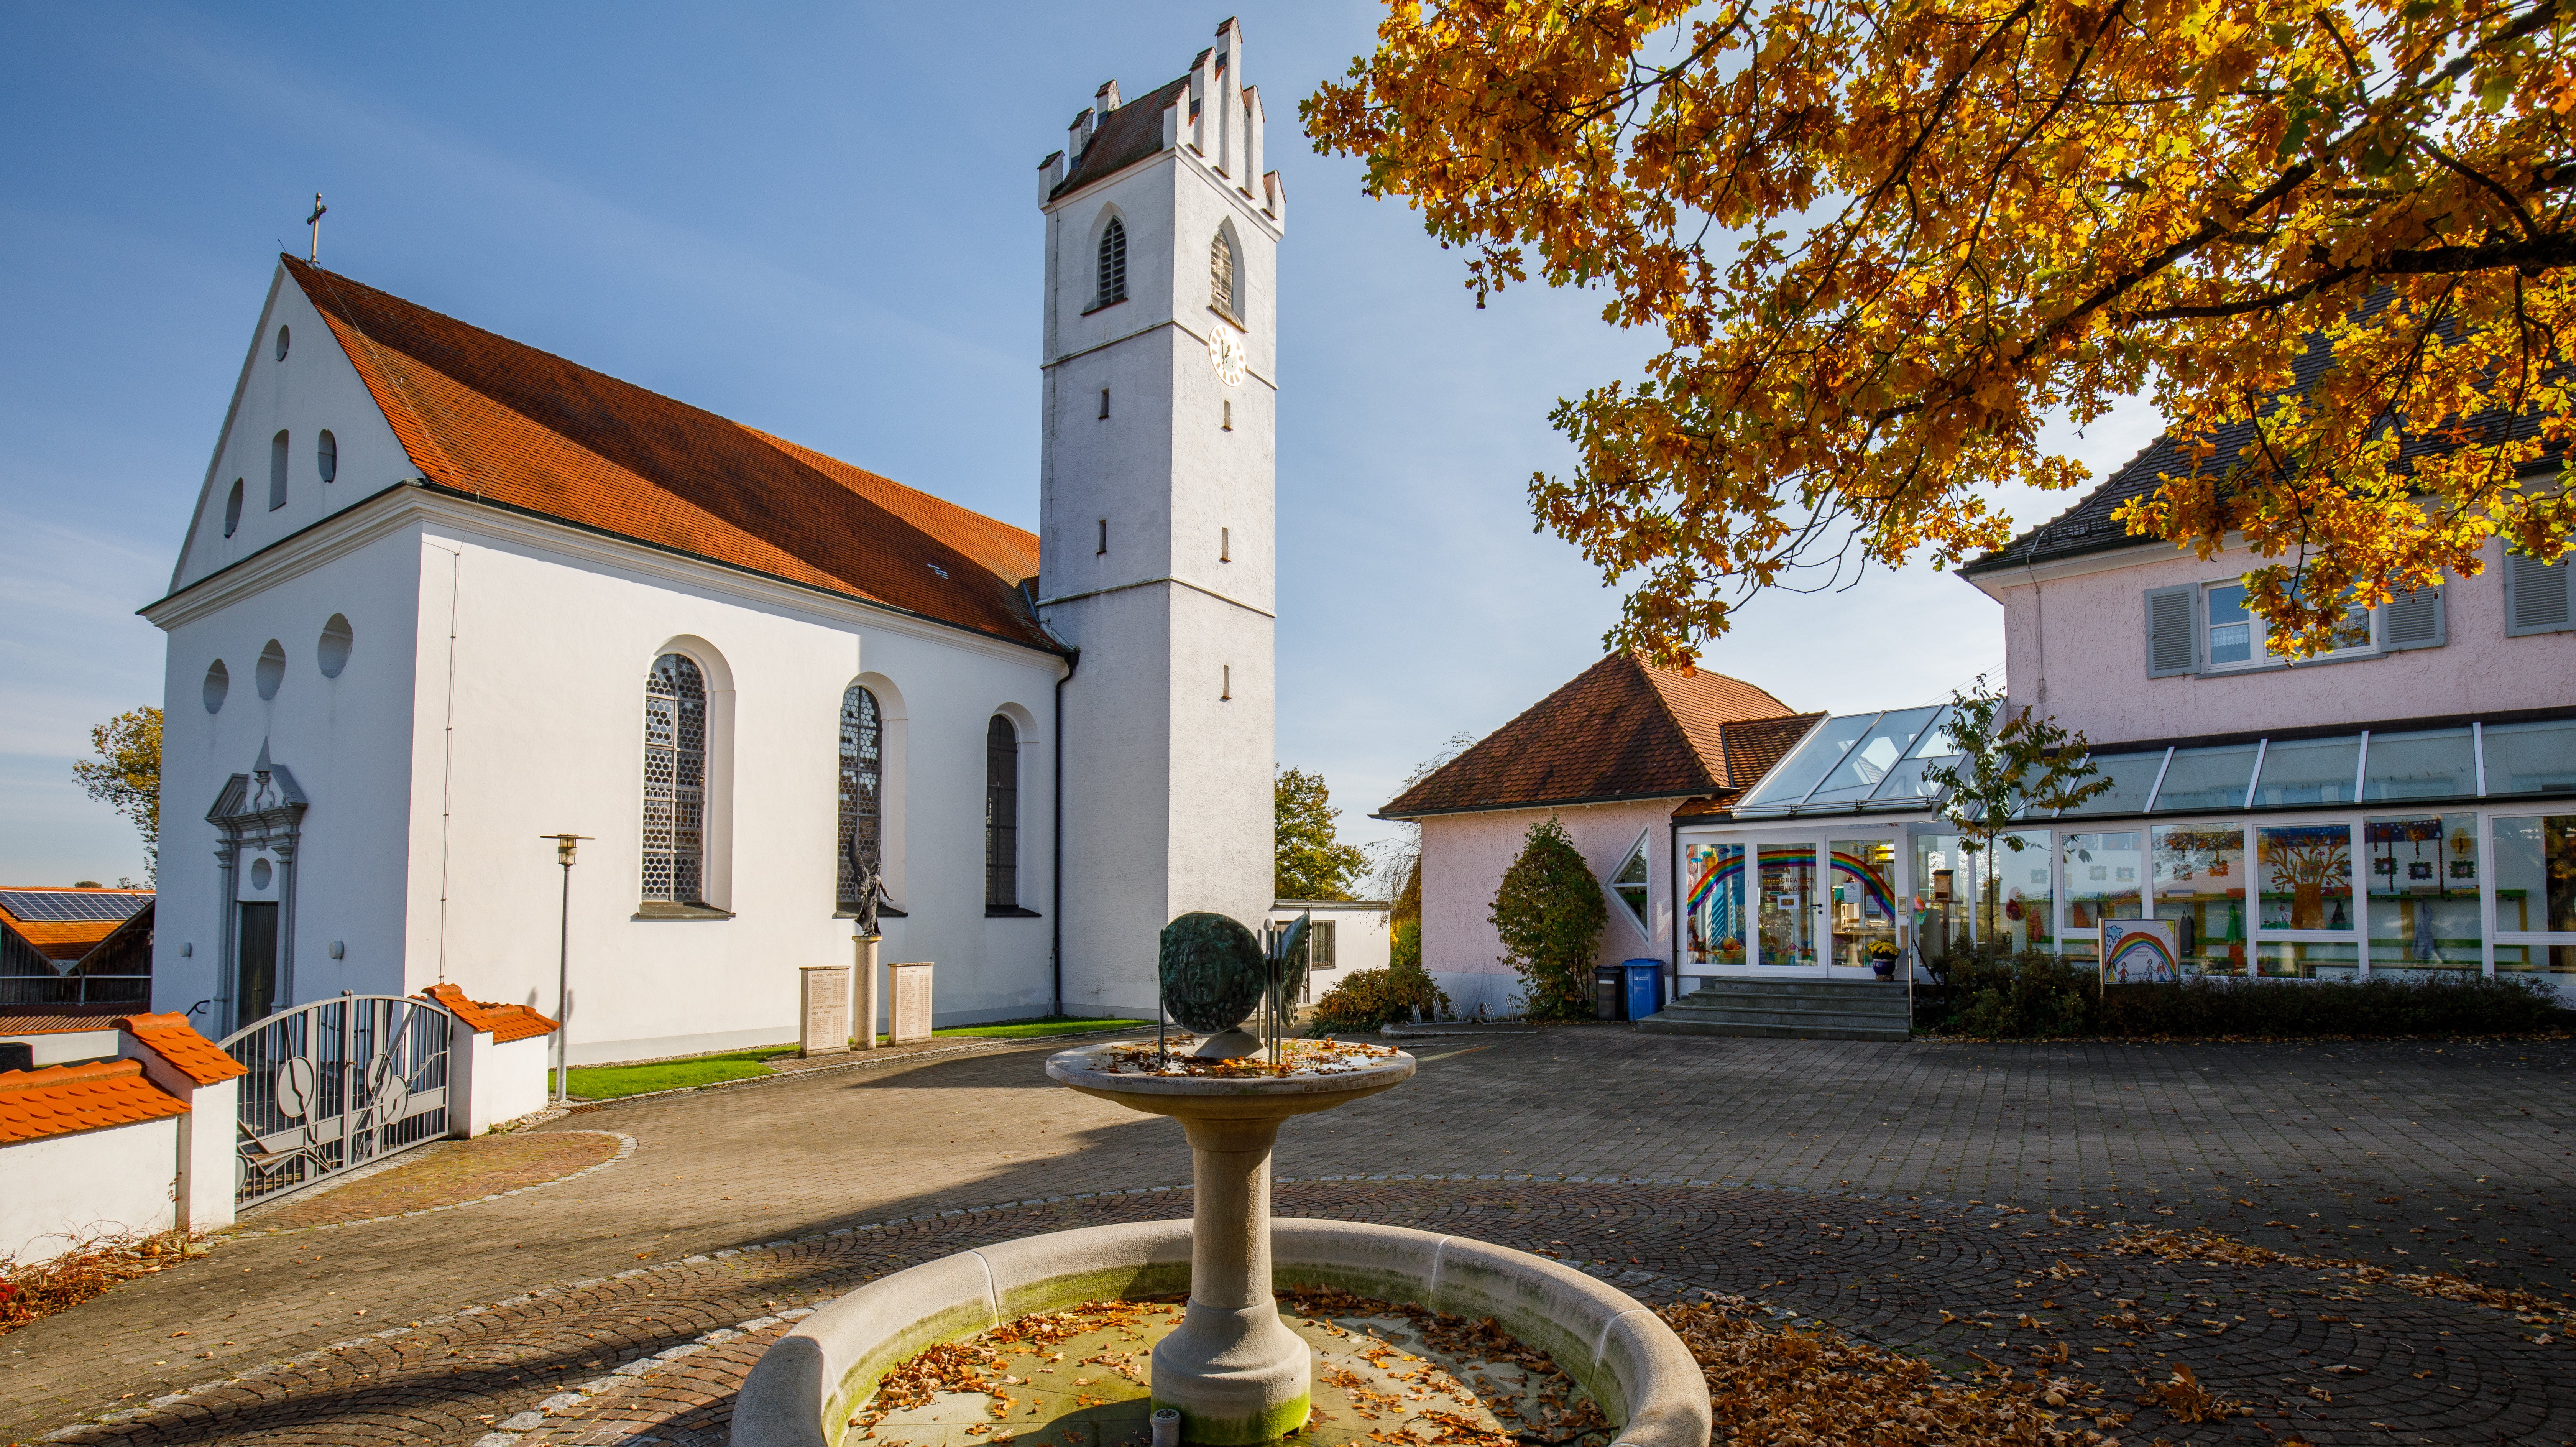 Pfarrkirche St. Mariä Himmelfahrt